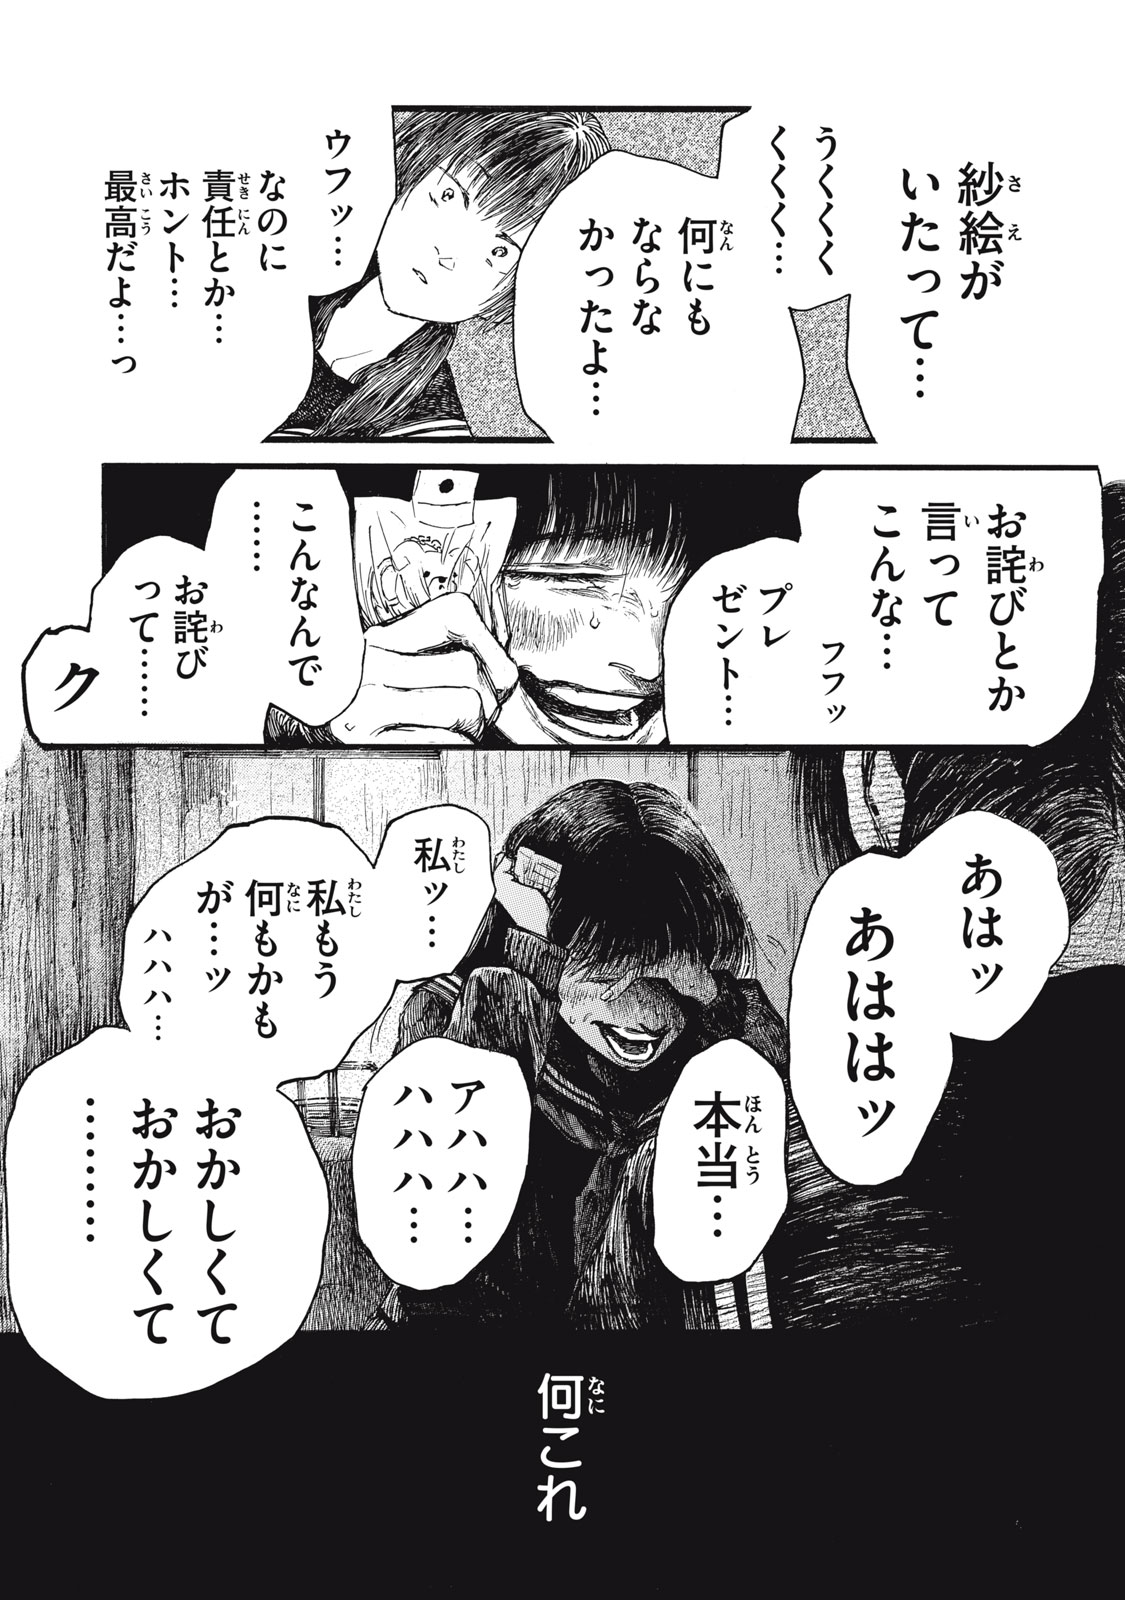 Watashi no Hara no Naka no Bakemono - Chapter 36 - Page 3